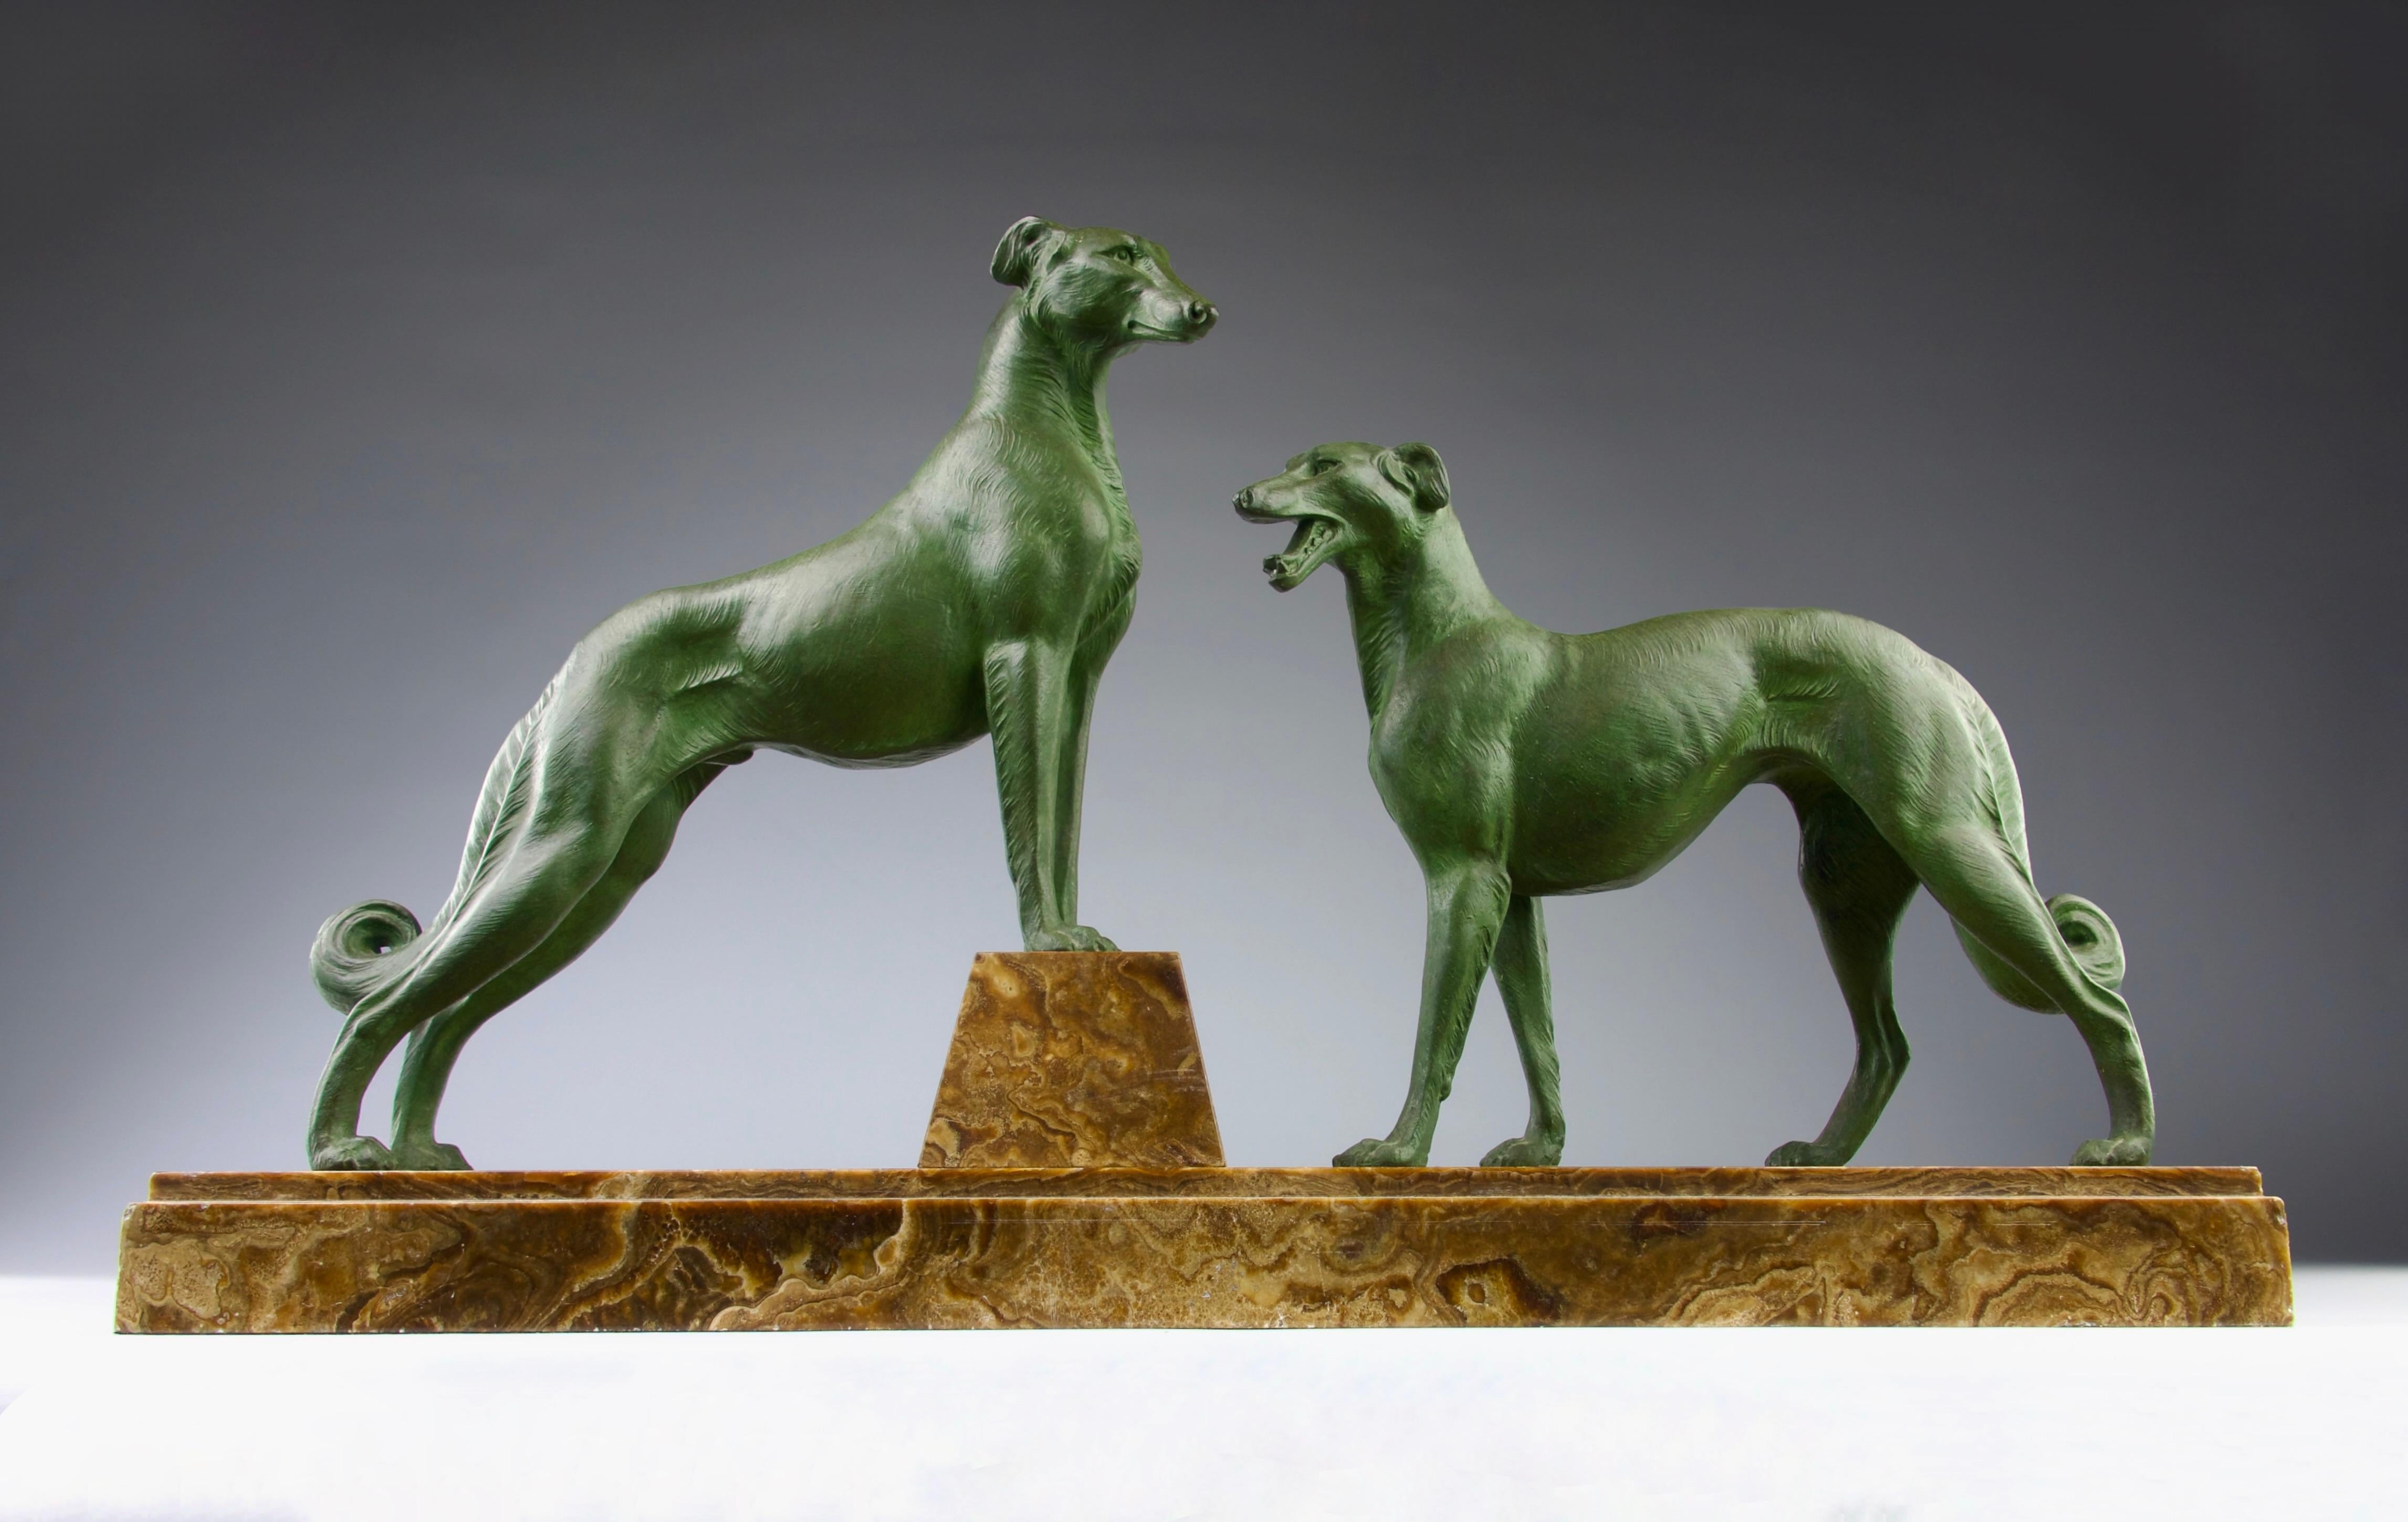 Hervorragende und große Skulptur von zwei aufmerksamen Windhunden in schöner grüner Patina aus der Zeit des Art déco. Auf einem eleganten Sockel aus braunem und weiß geädertem Marmor.

Abmessungen in cm ( H x L x L ) : 66 x 38 x 14

Sicherer Versand